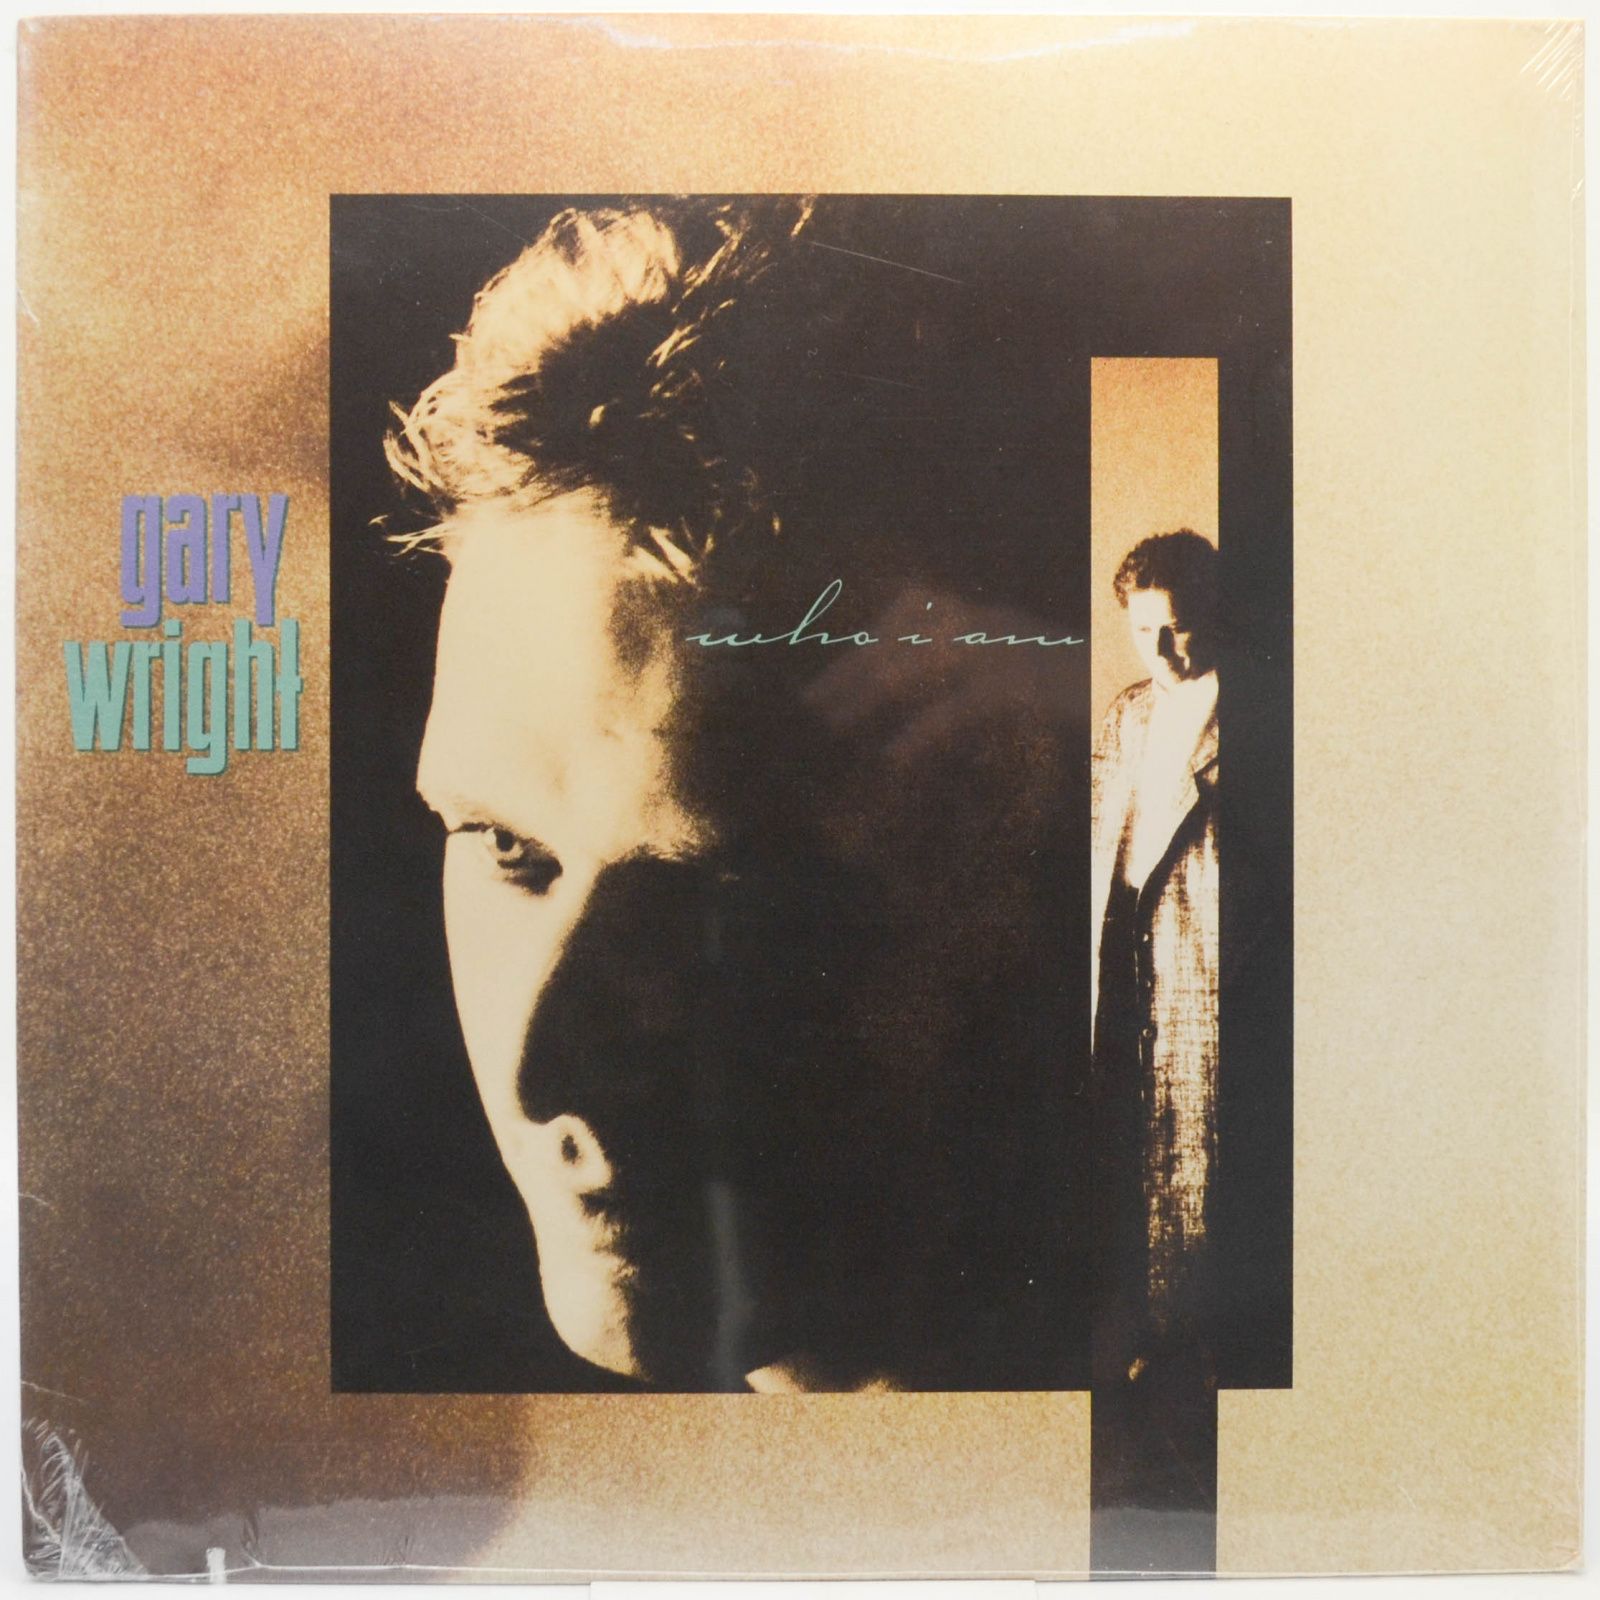 Gary Wright — Who I Am, 1988